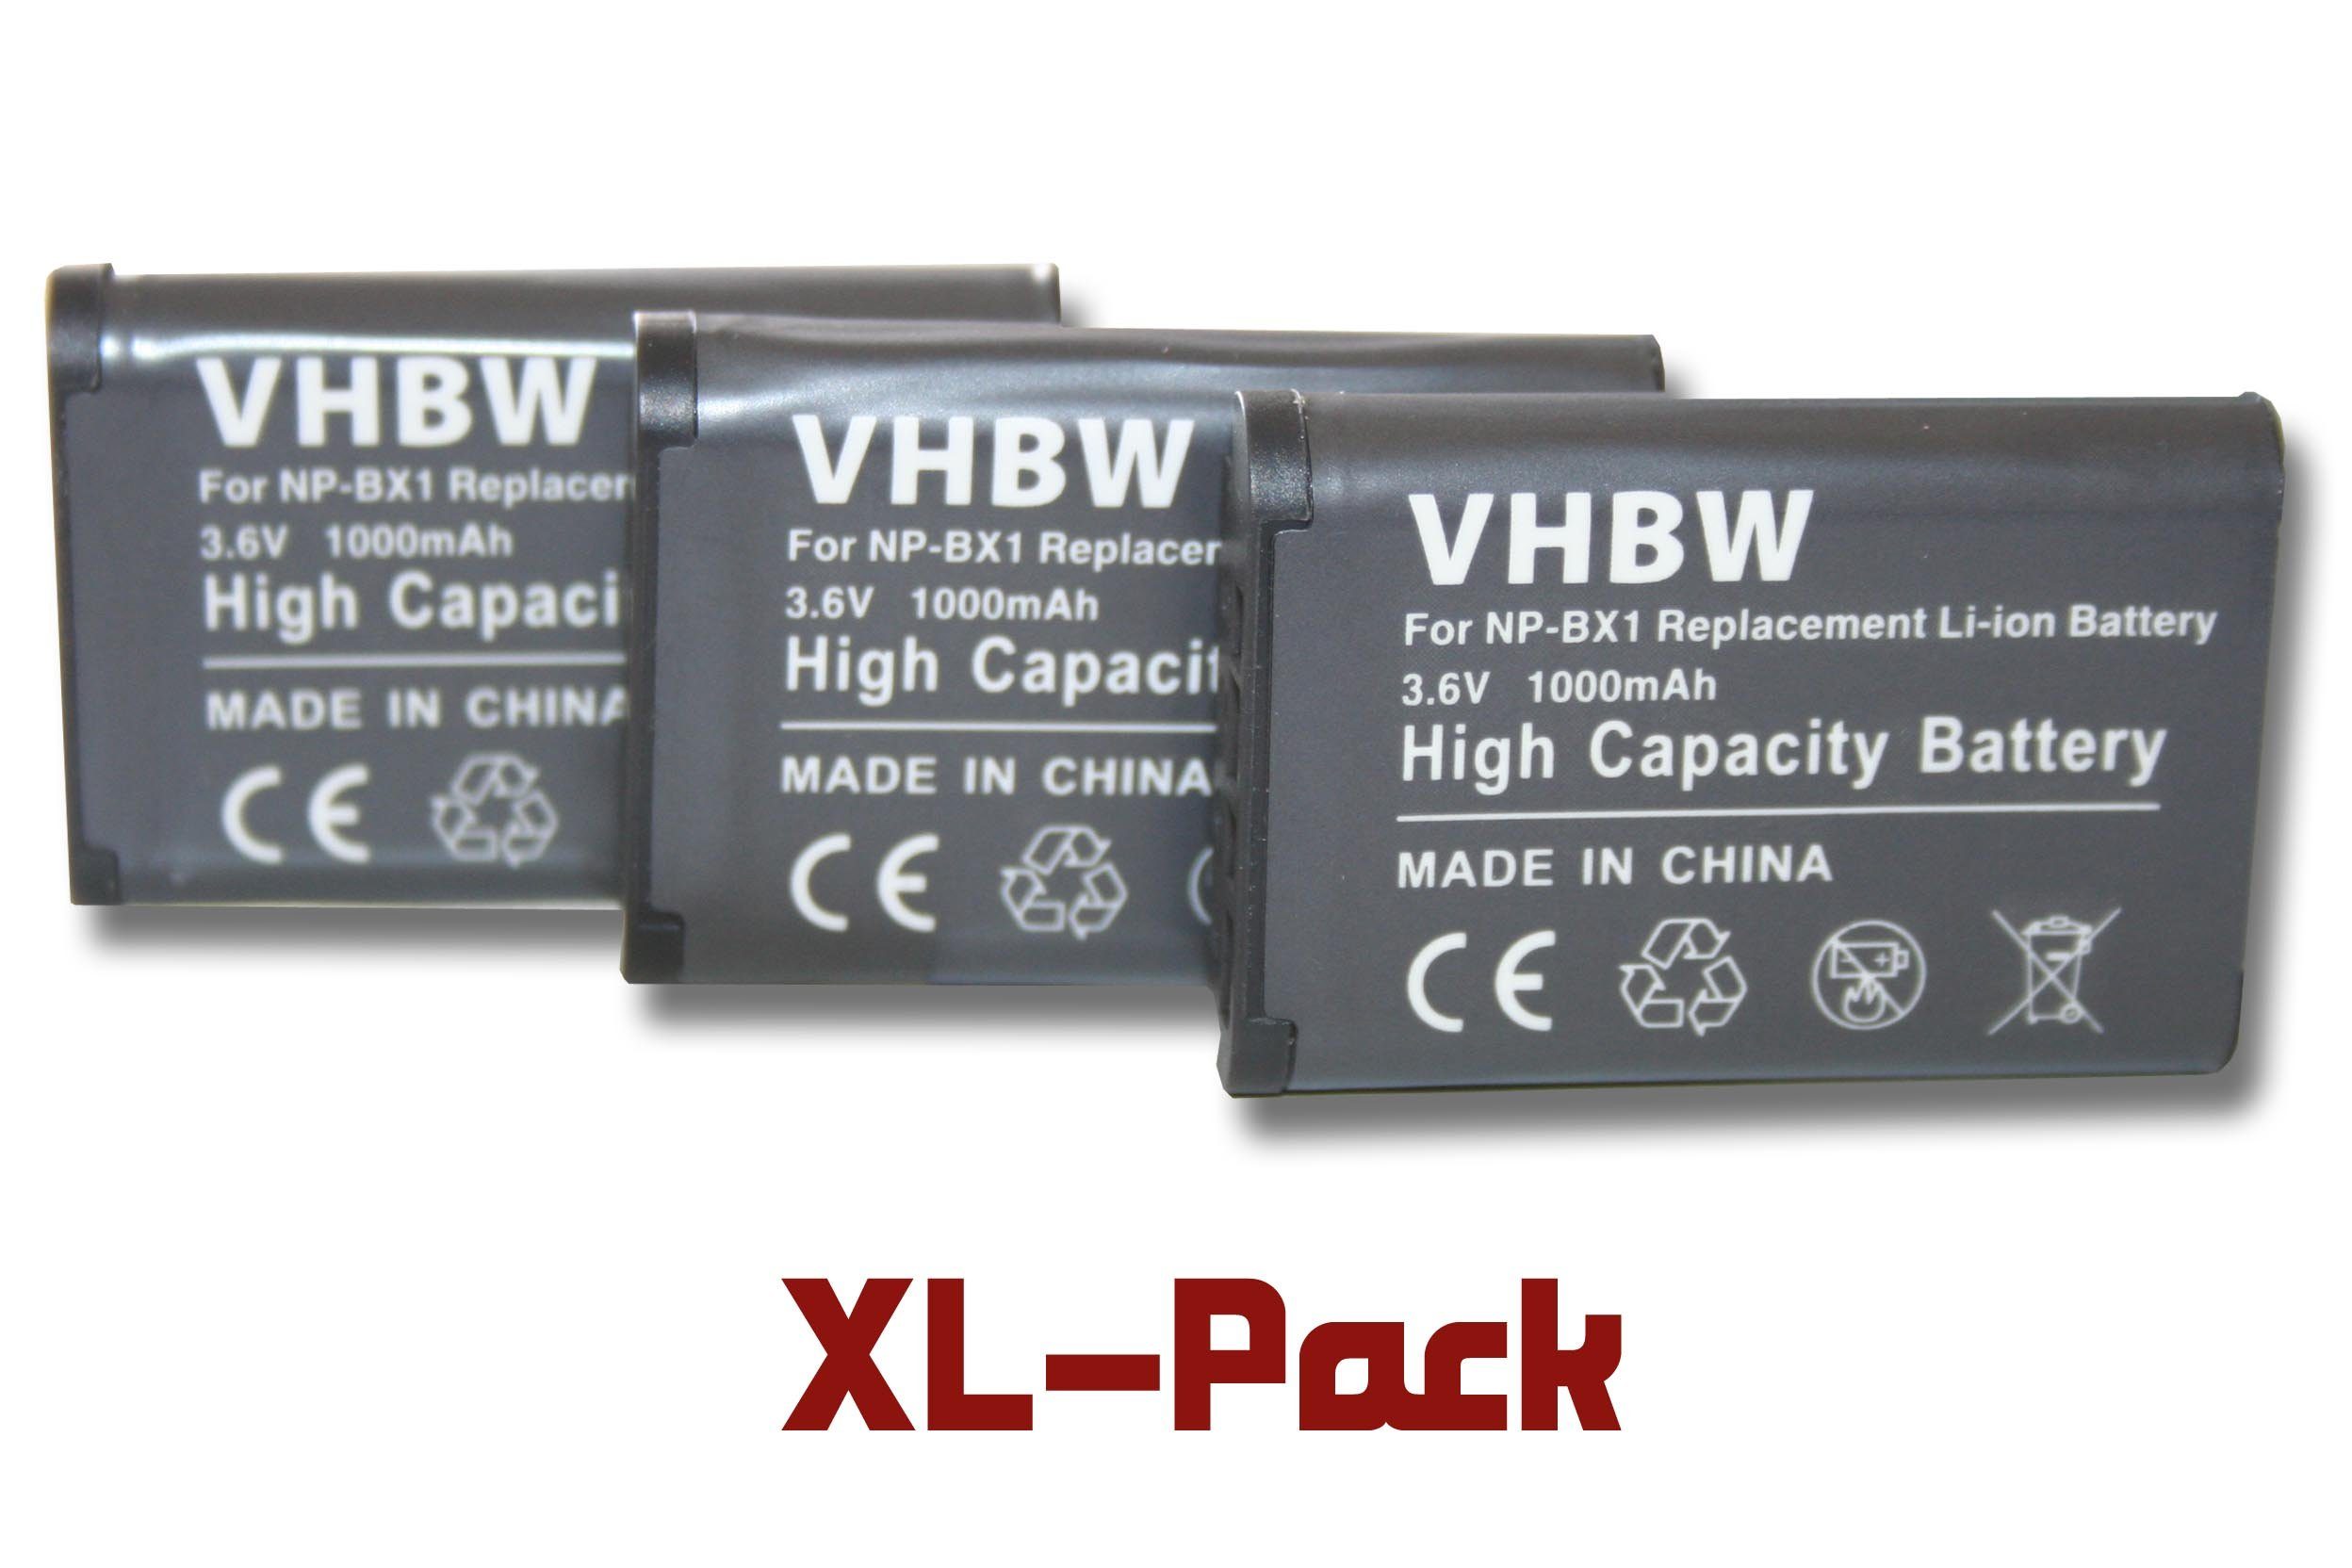 vhbw Kamera-Akku passend für Kompatibel mit Sony Cybershot DSC-HX50, DSC-HX50V, DSC-HX60, DSC-HX400V, DSC-HX60V Kamera / Foto Kompakt / Camcorder Digital (1000mAh, 3,6V, Li-Ion) 1000 mAh